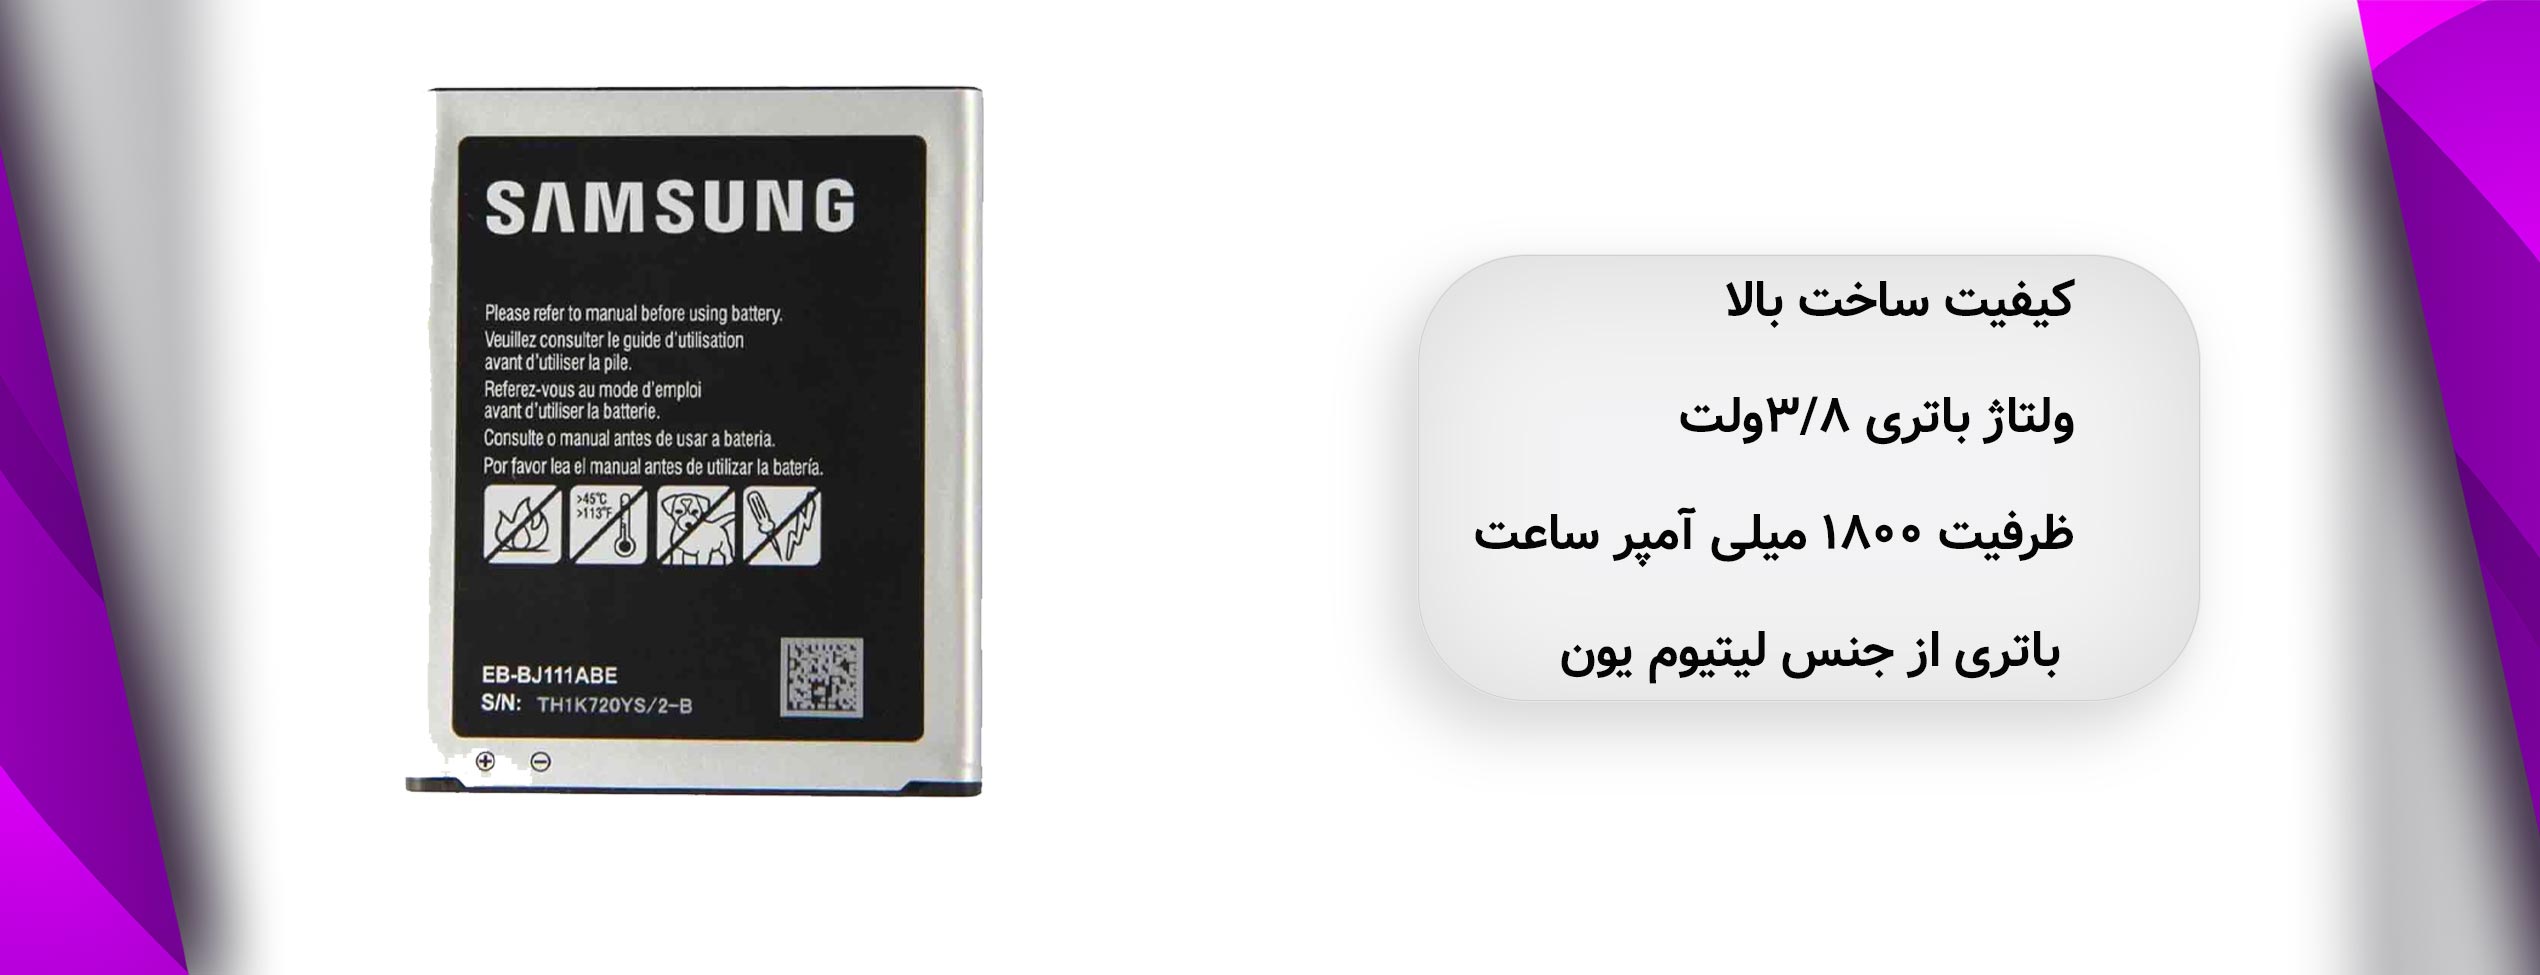 باتری اصلی موبایل سامسونگ Samsung J1 ACE 3G / J111